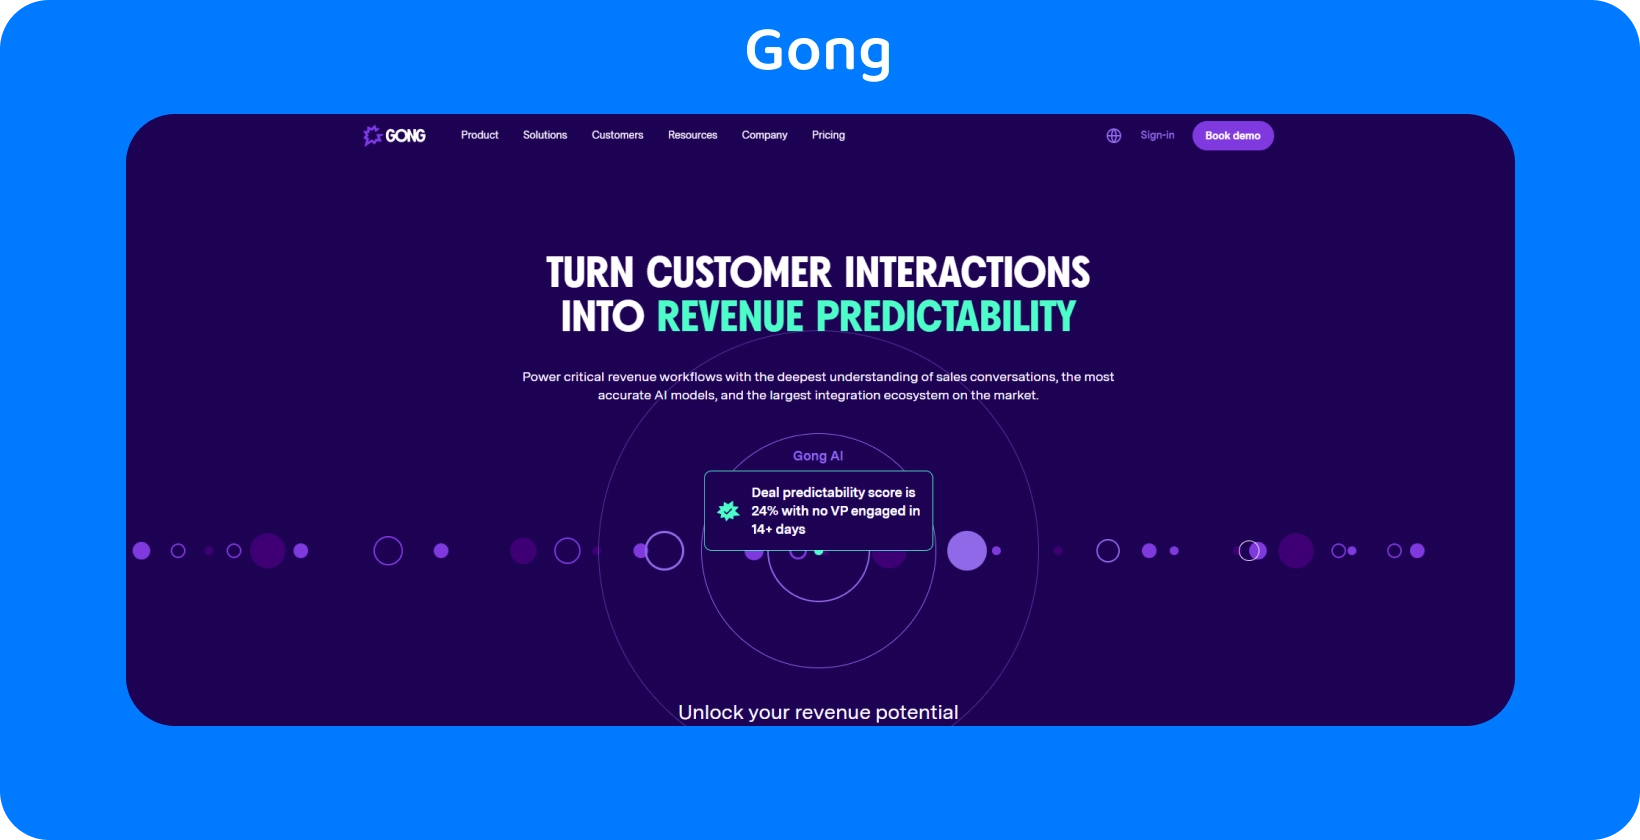 A interface do Gong destaca a conversão da interação com o cliente em previsibilidade de receita, utilizando AI para vendas.